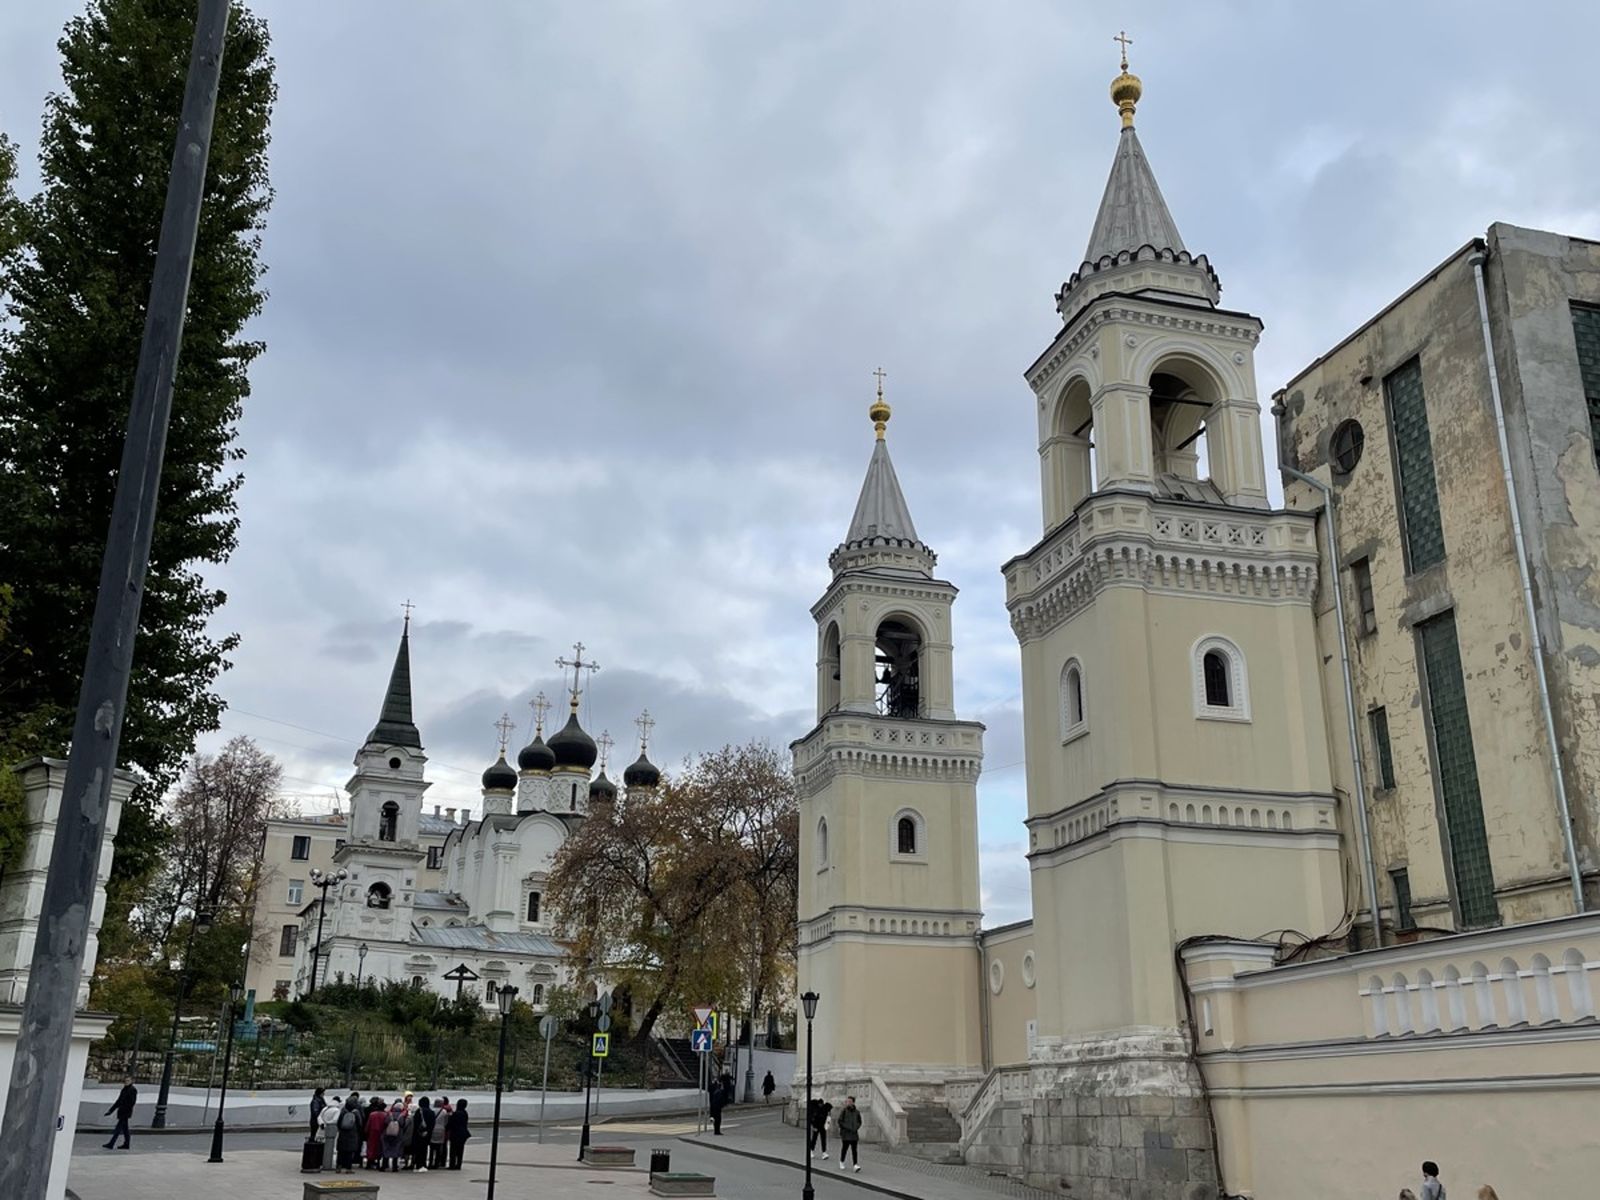 Ивановский монастырь и церковь Св. Владимира в Старых Садех